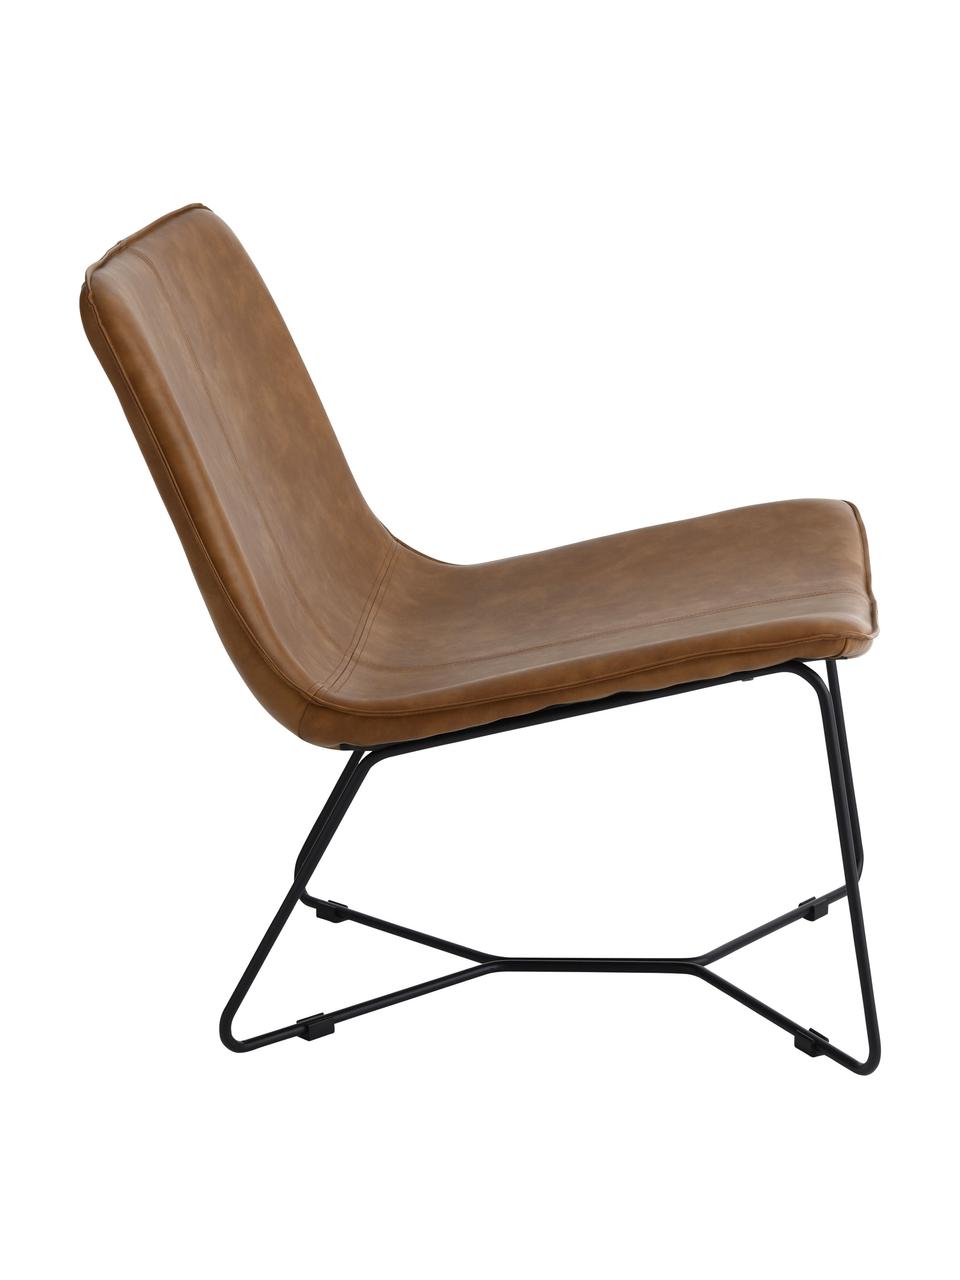 Chaise lounge en cuir synthétique brun Barrel, Cuir synthétique brun, noir, larg. 68 x prof. 64 cm